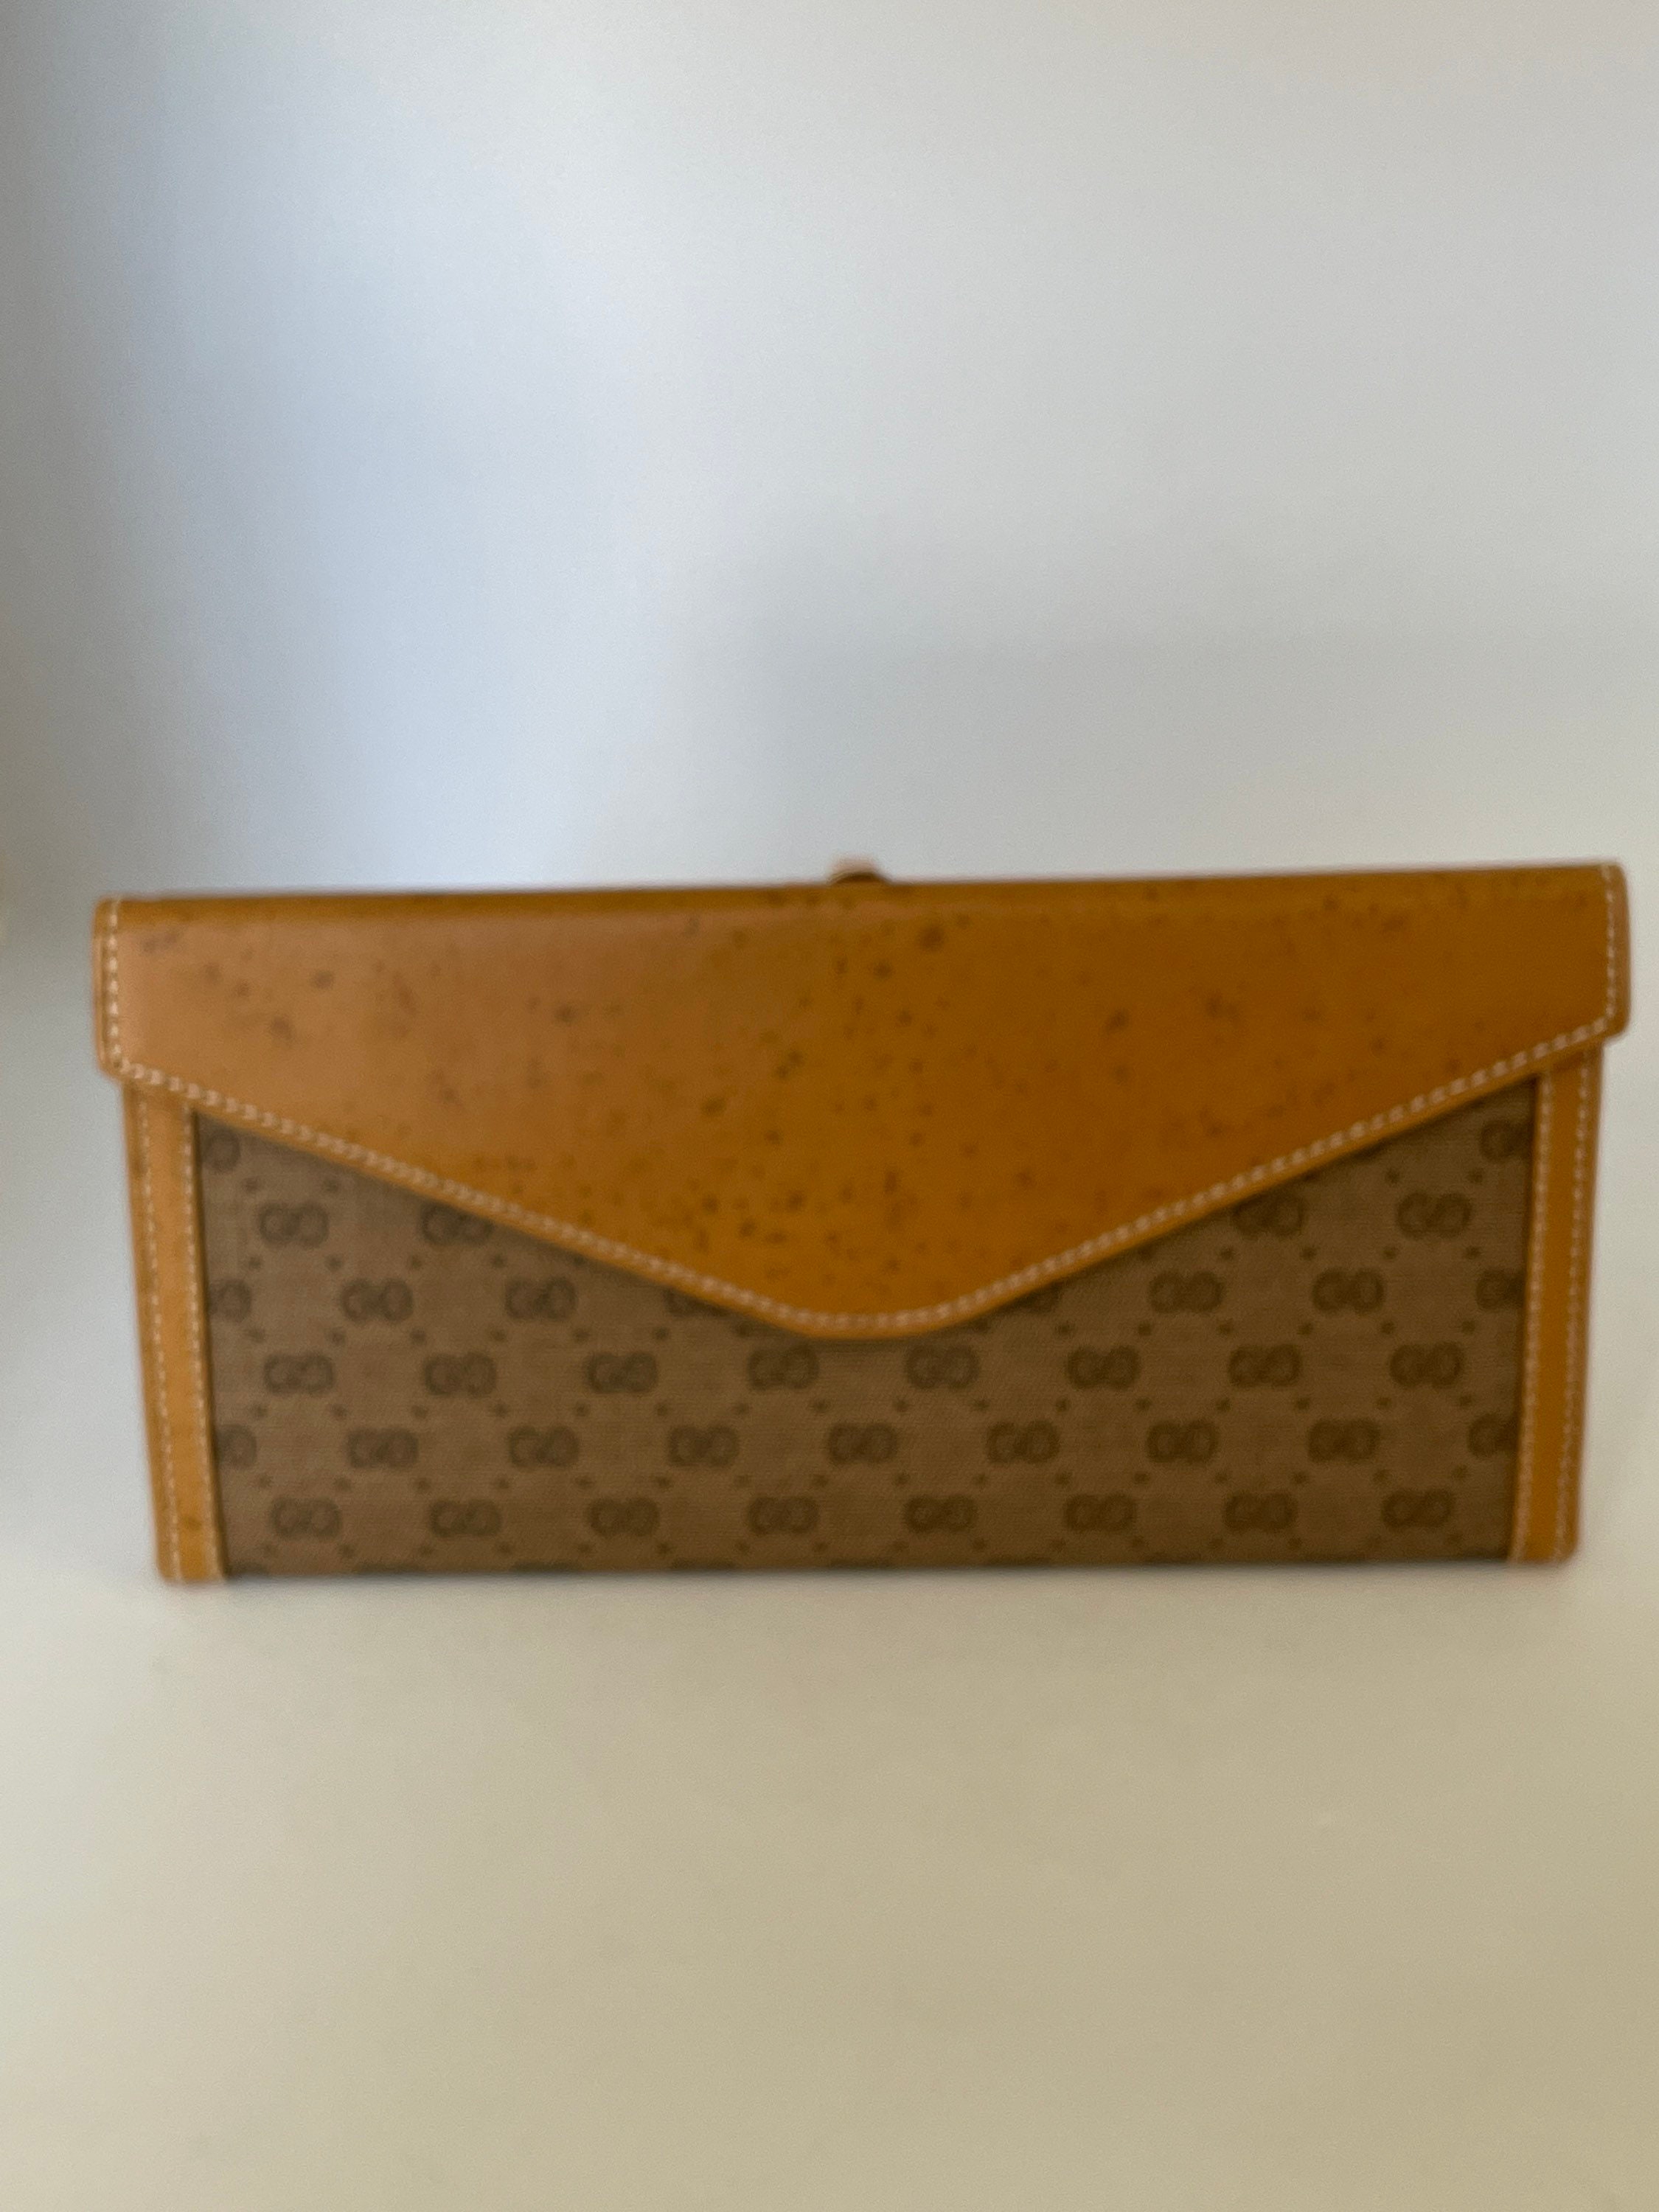 Vintage Gucci wallet snap pocket interior has checkbook six credit